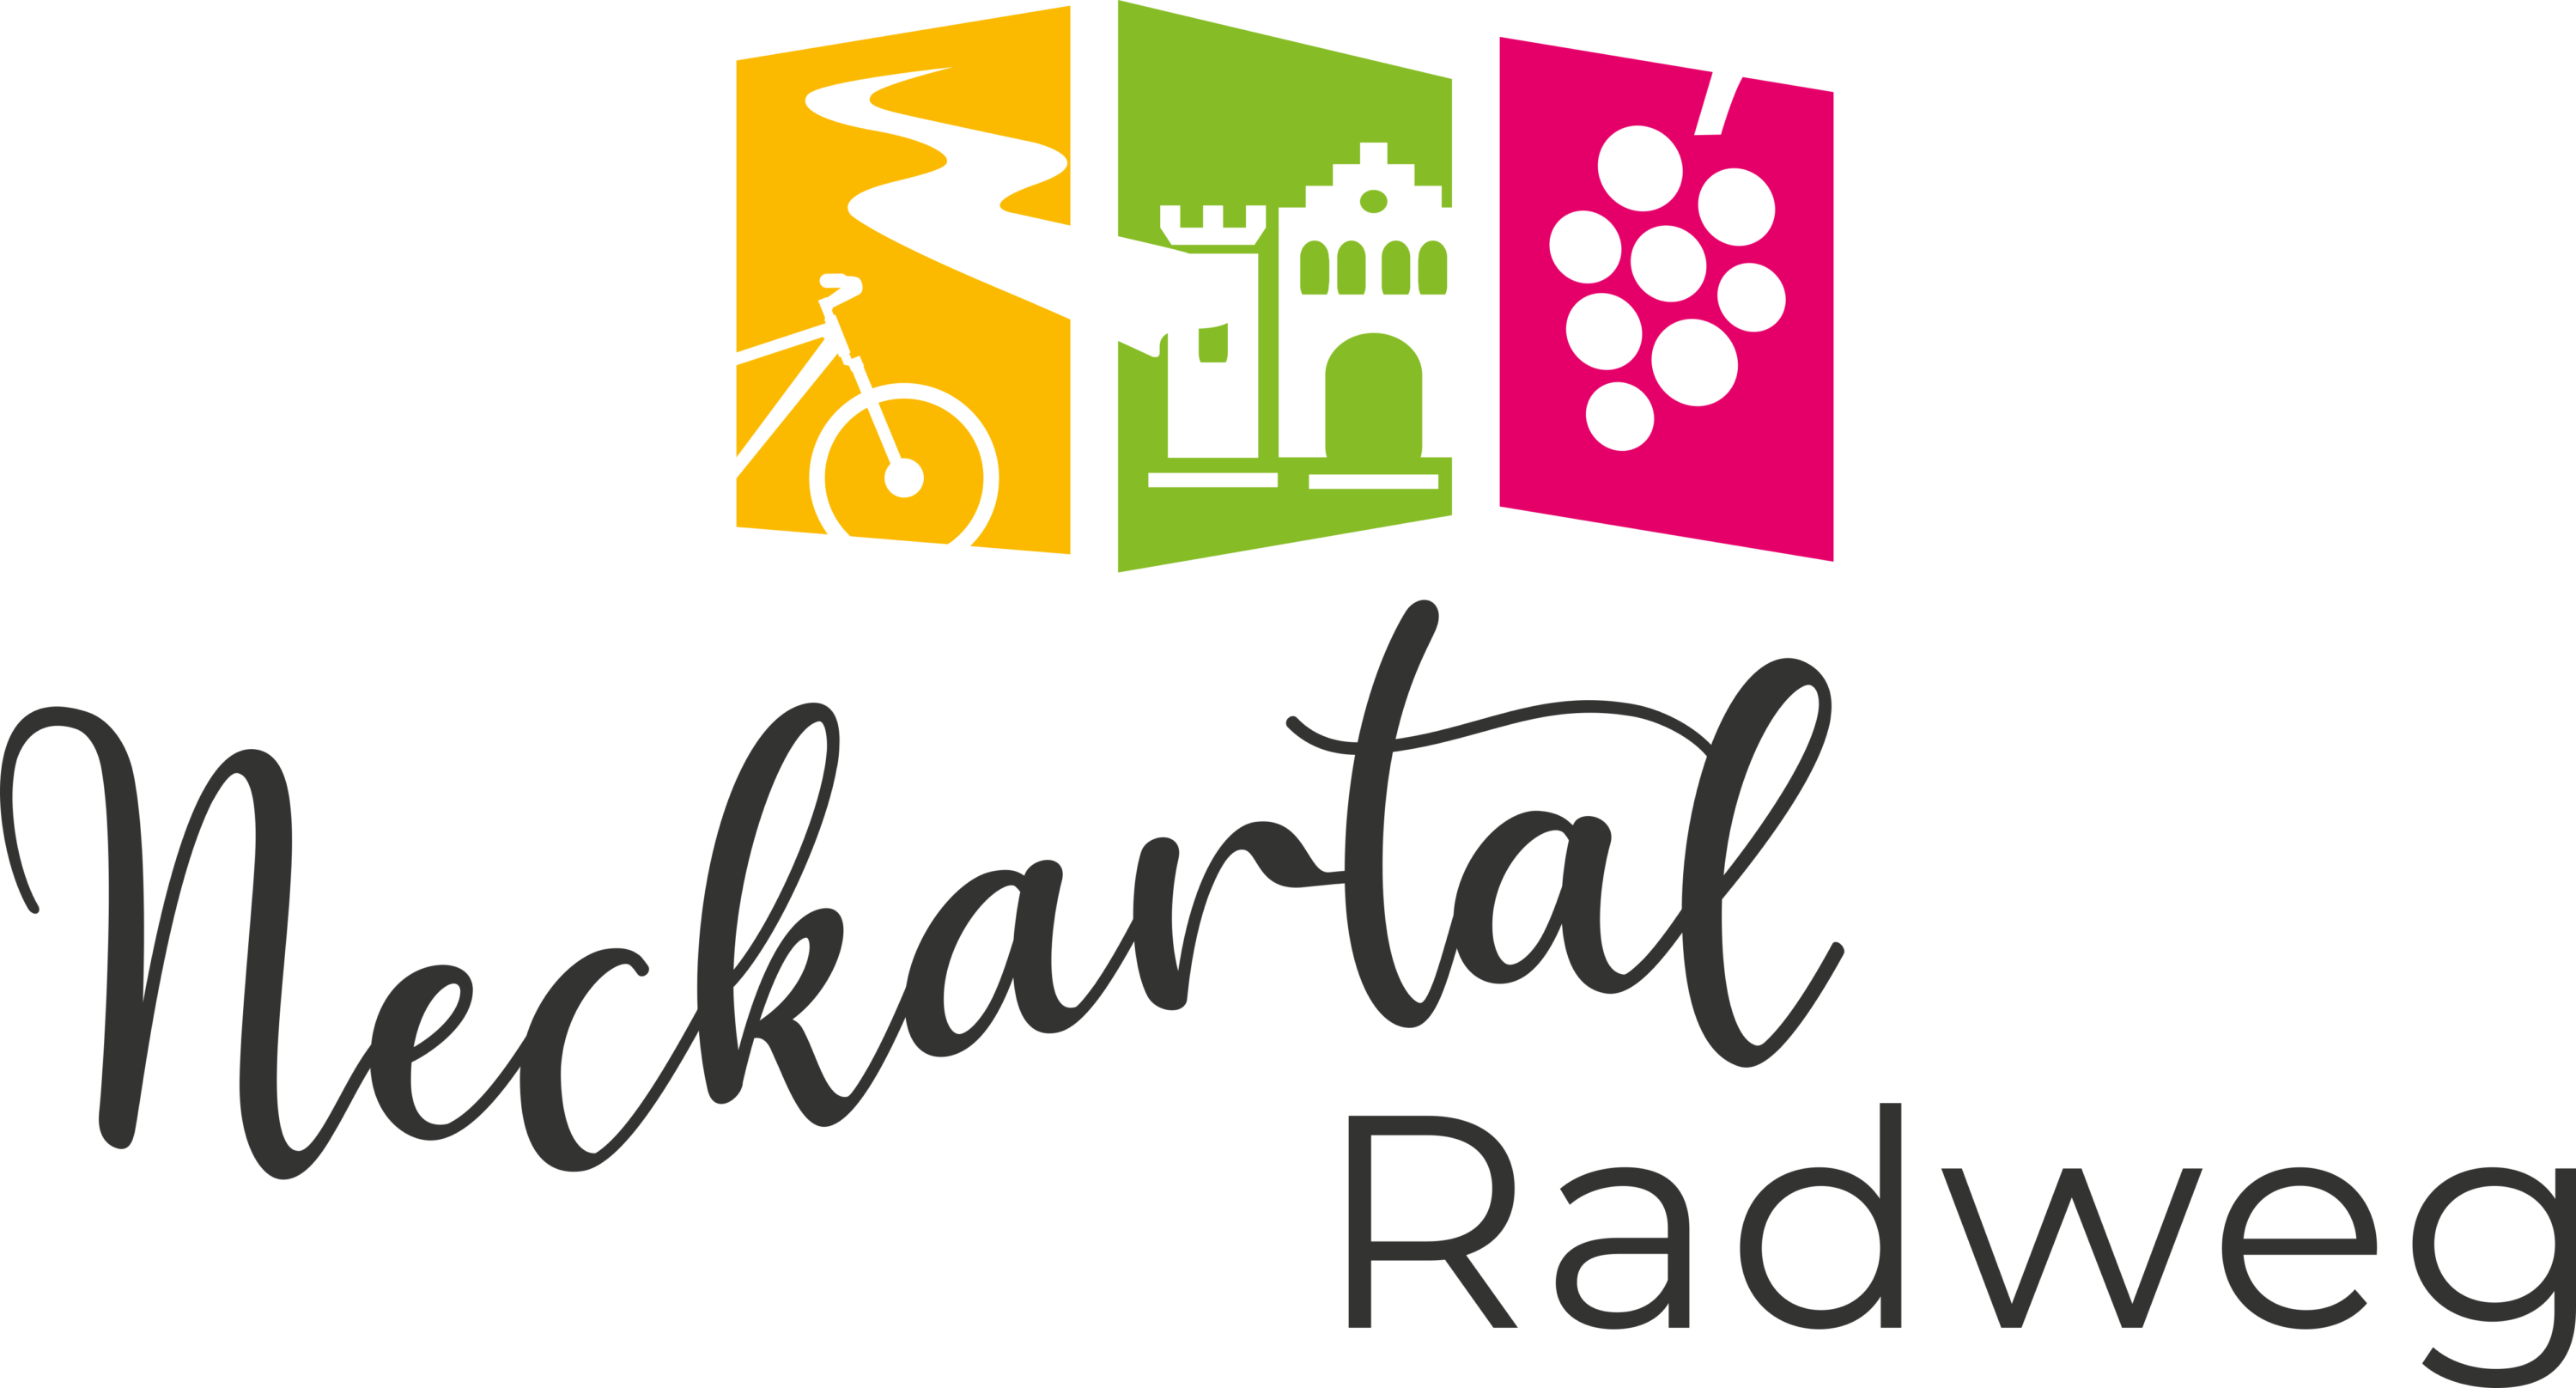 Neckartal Radweg Logo